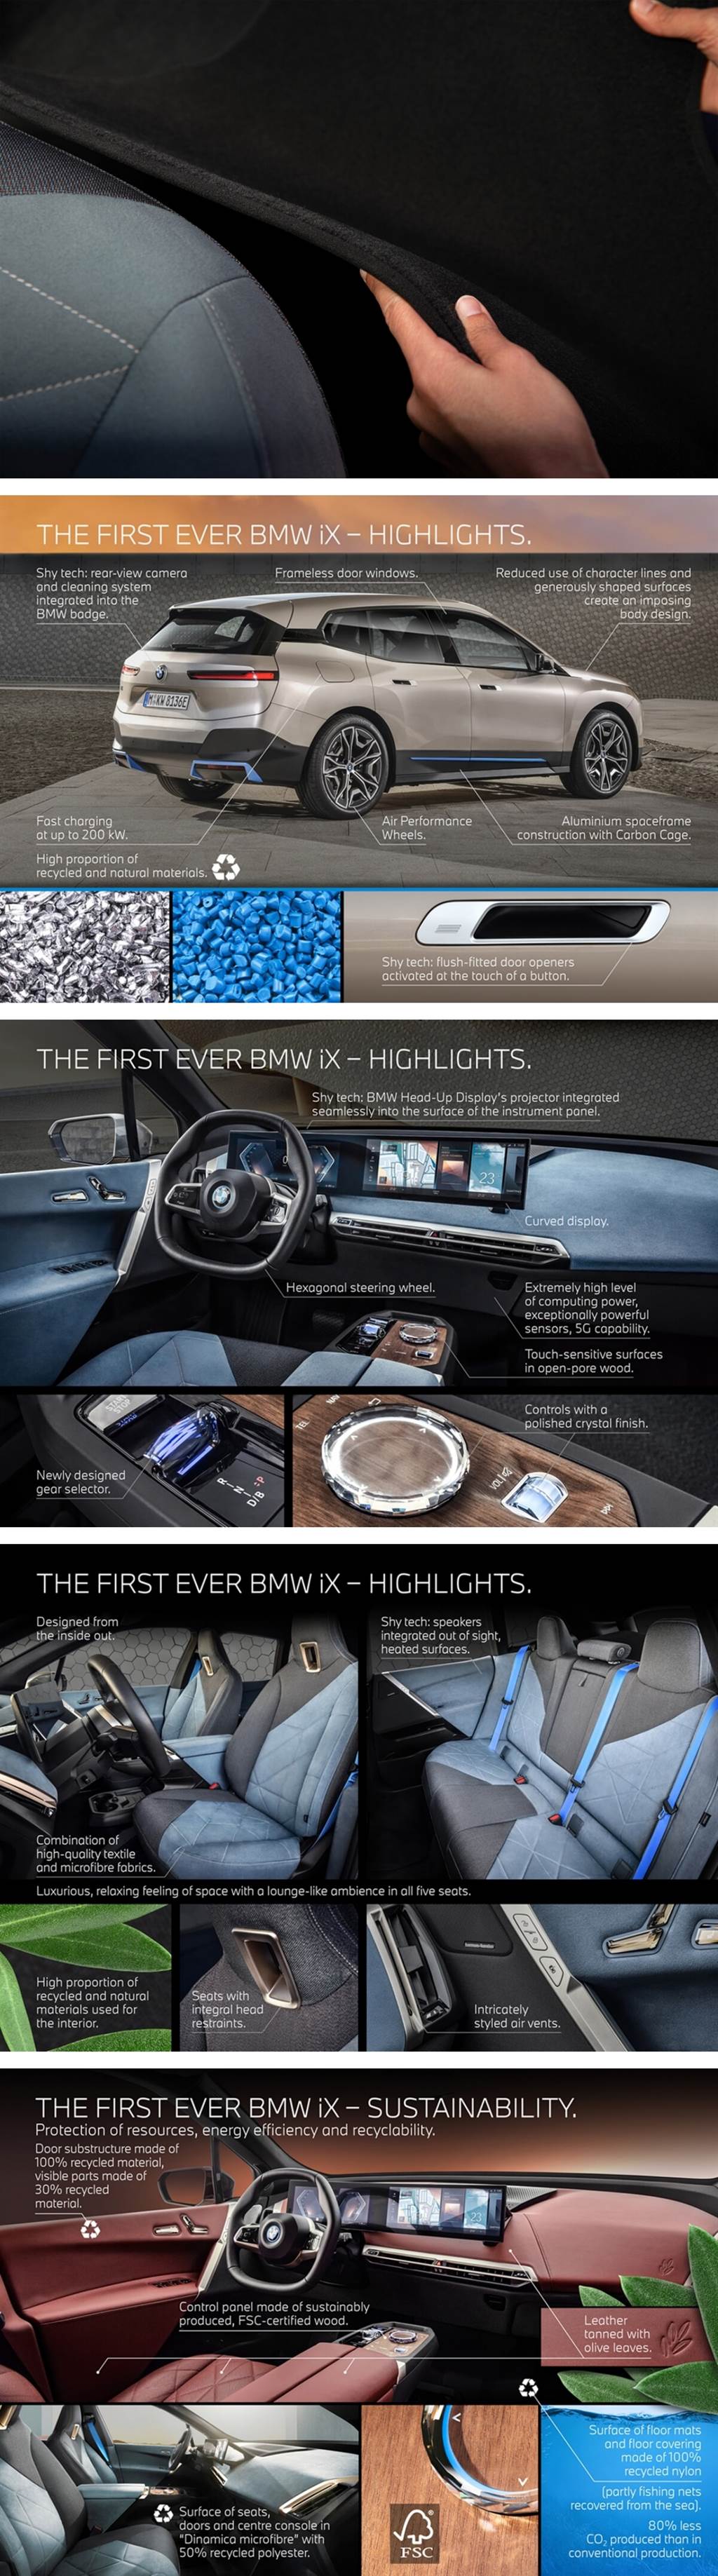 BMW車內設計現在使用越來越多的可持續材料
